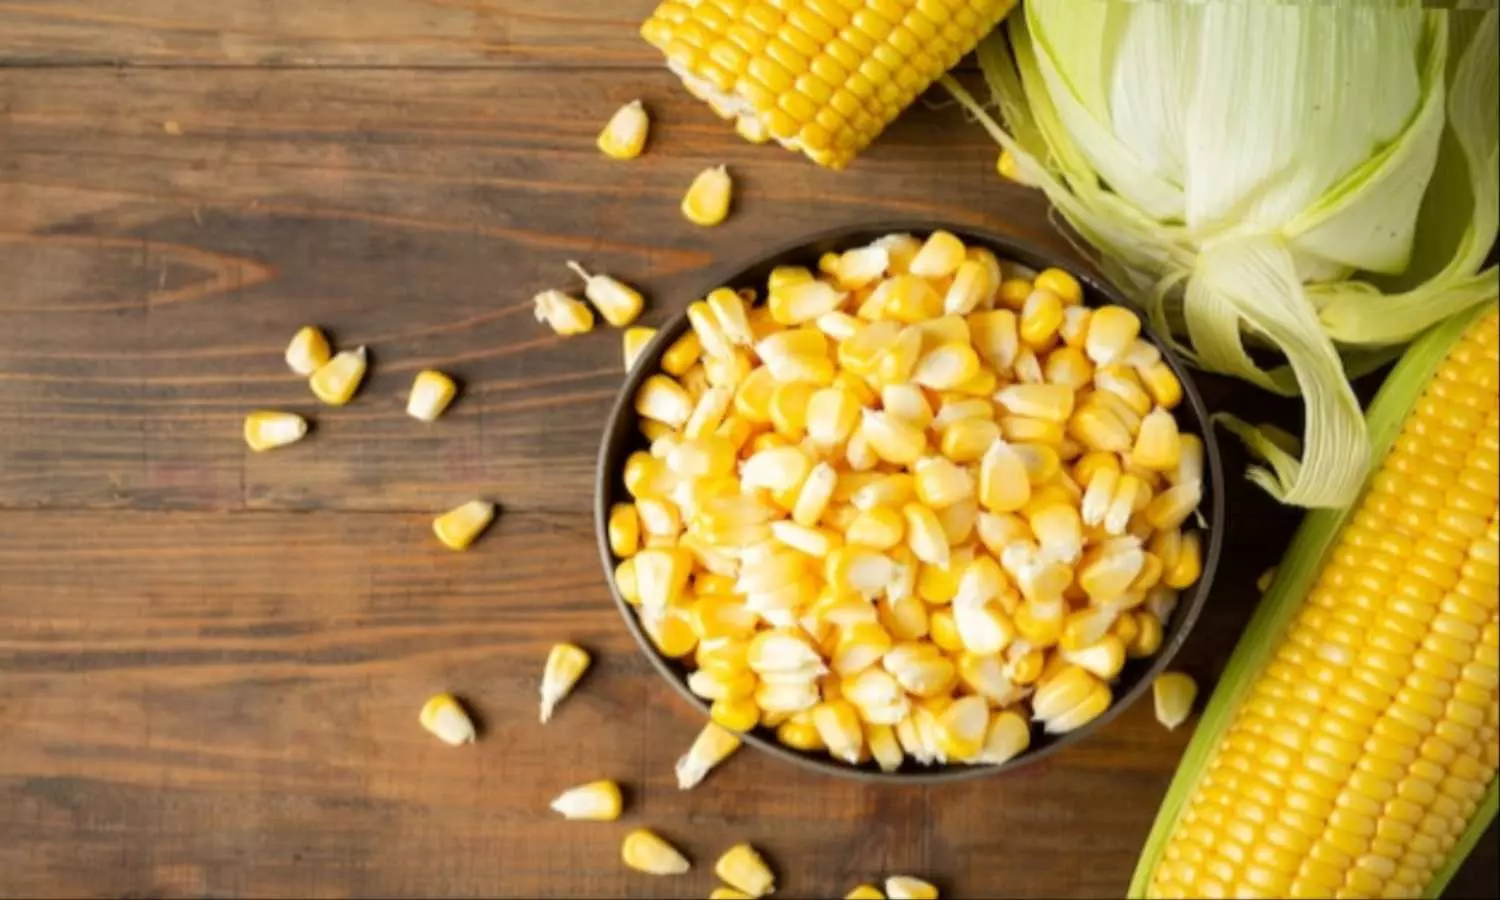 Sweet Corn Benefits: दिल को स्वस्थ रखने से लेकर ब्लड शुगर कंट्रोल करने तक, किसी रामबाण इलाज से कम नहीं है मक्का